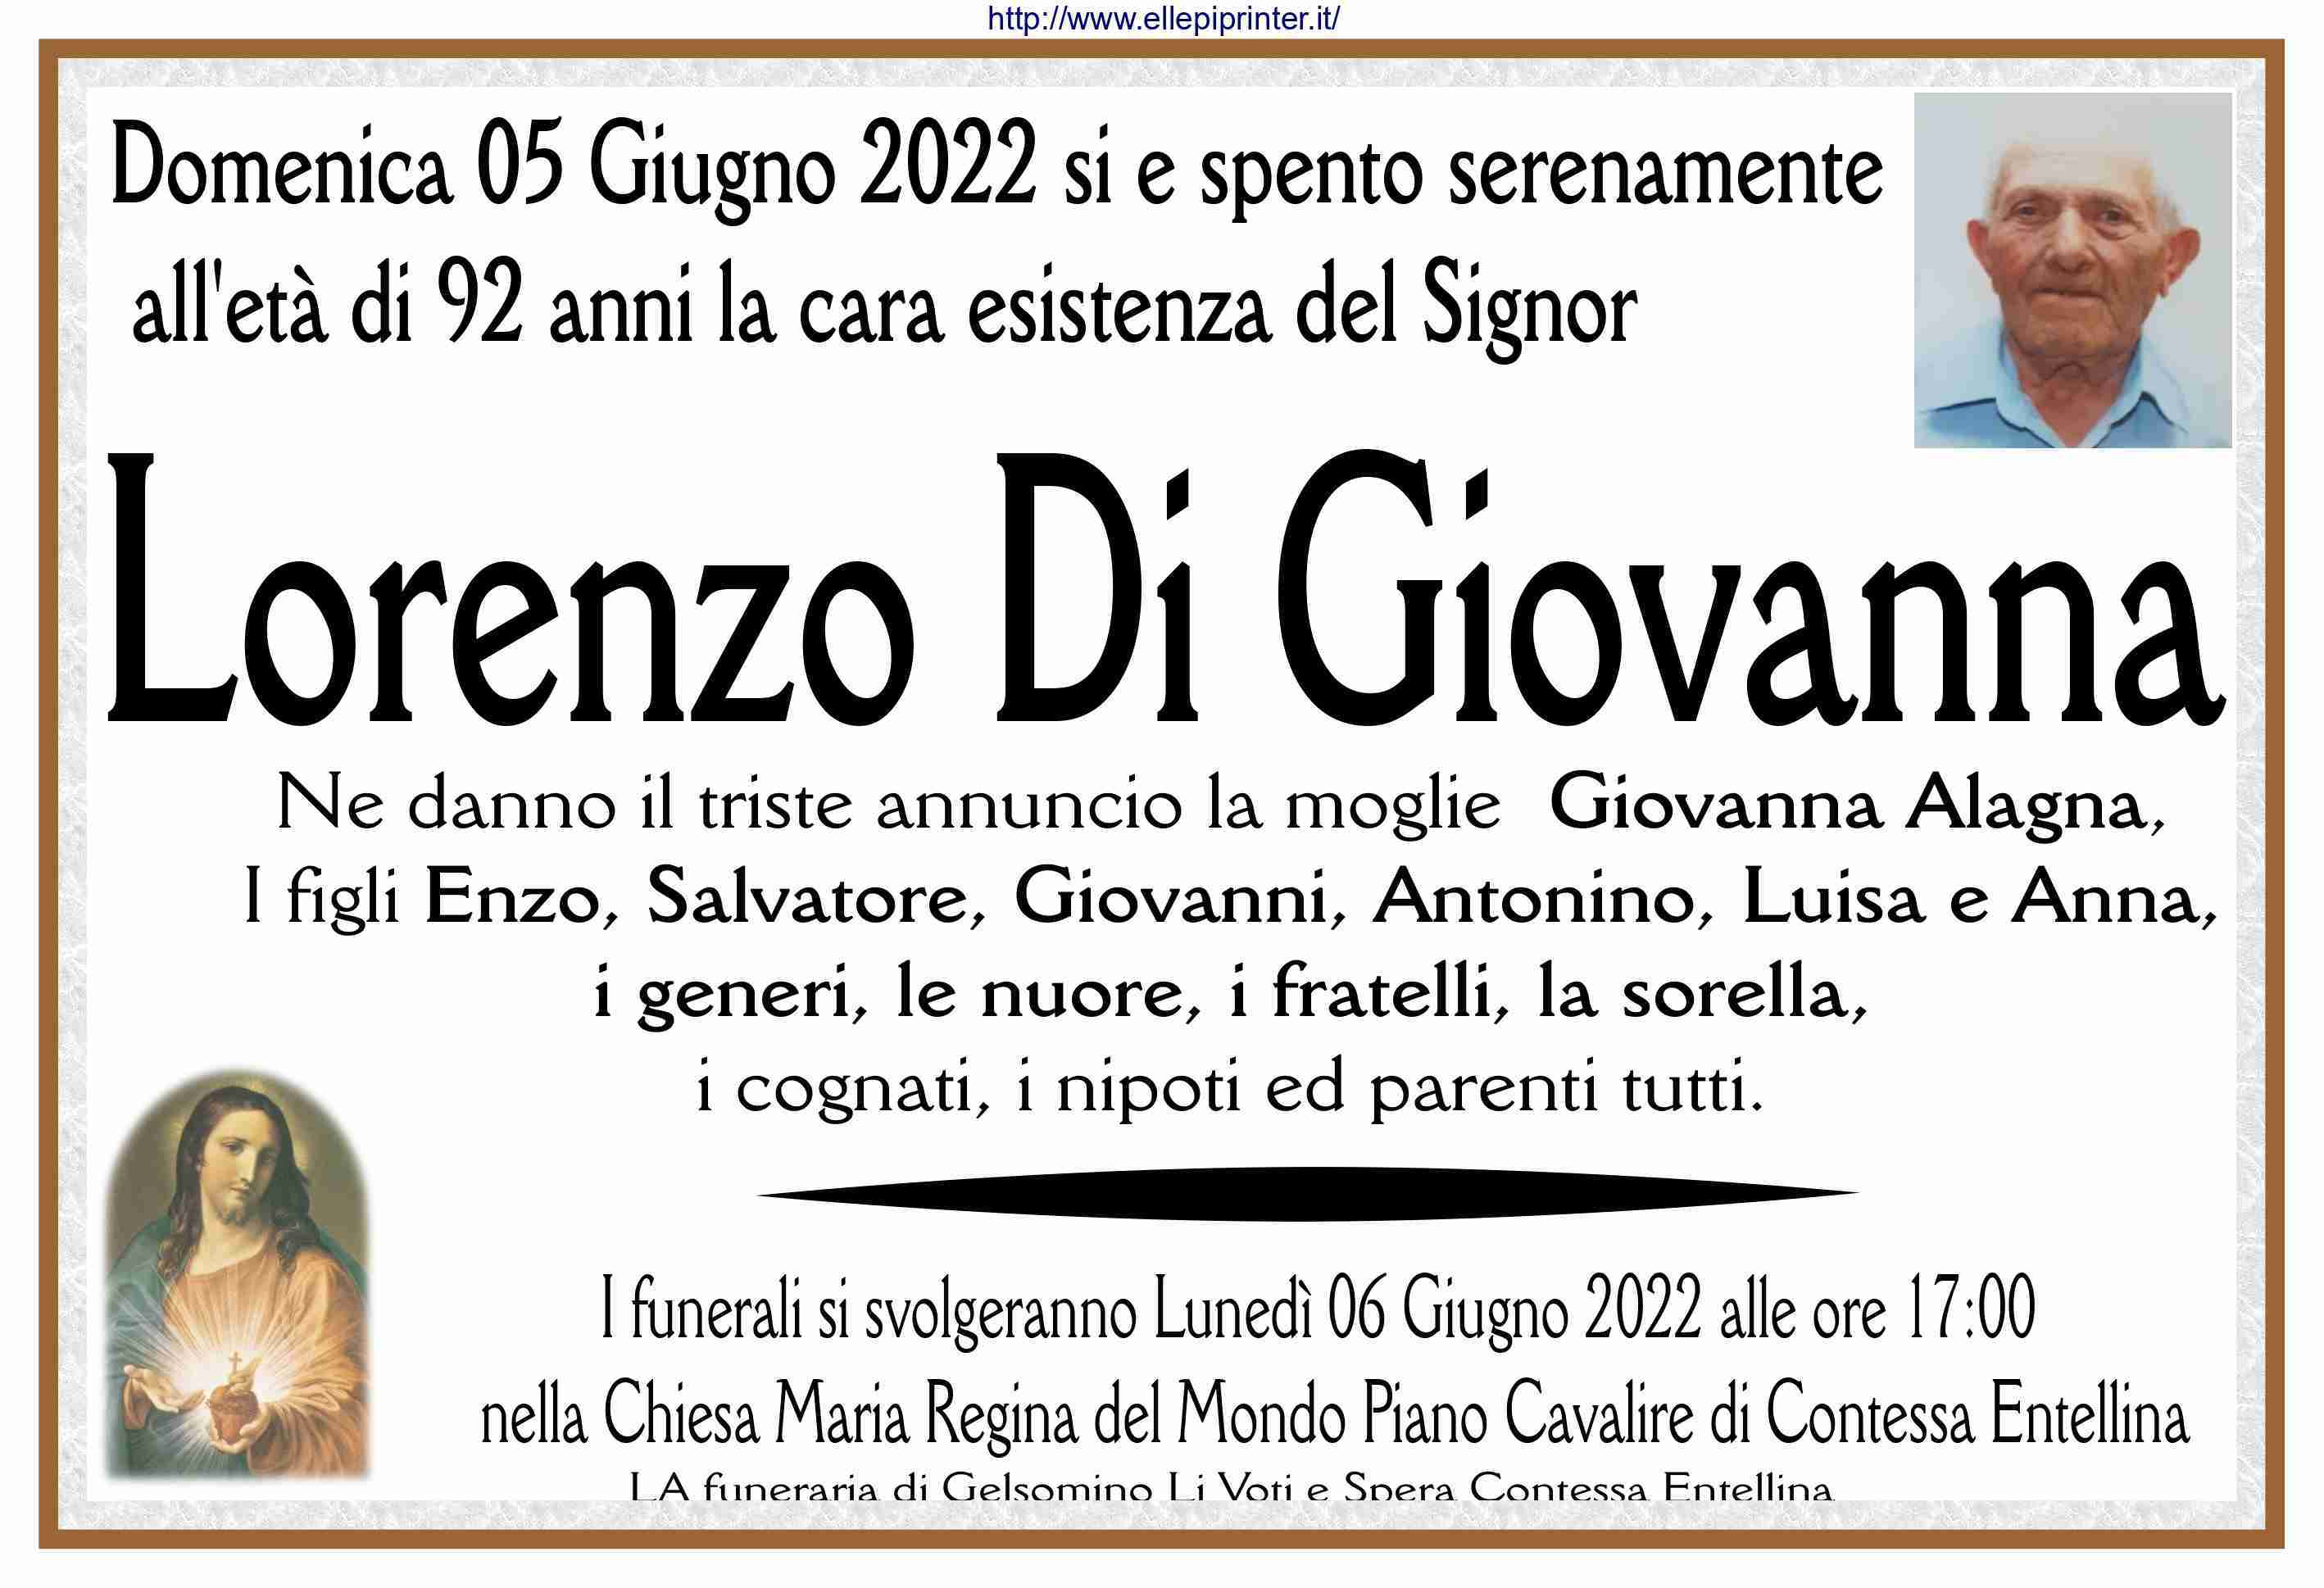 Lorenzo Di Giovanna